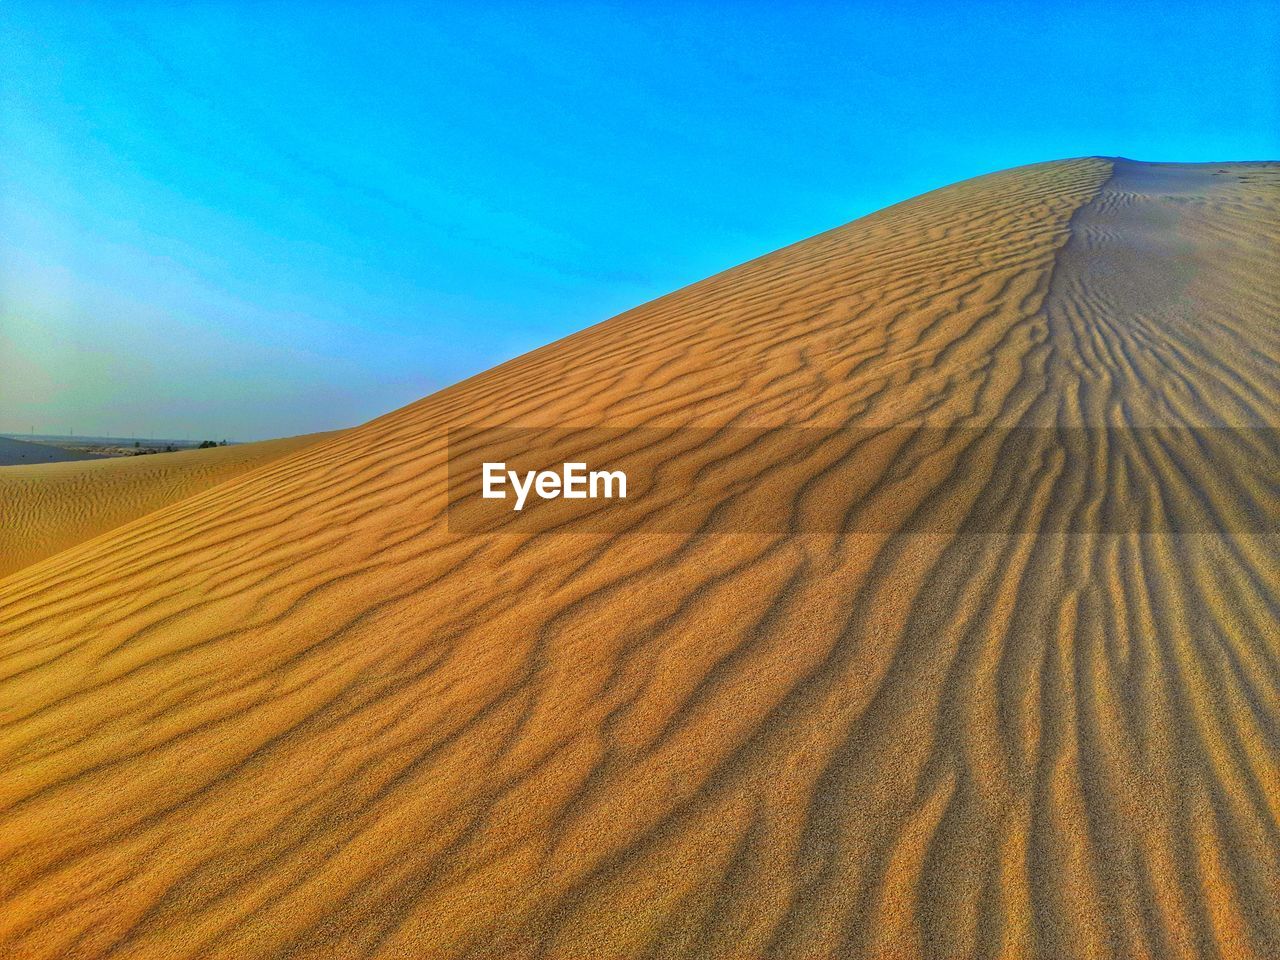 Sand dunes waves in desert of algeria